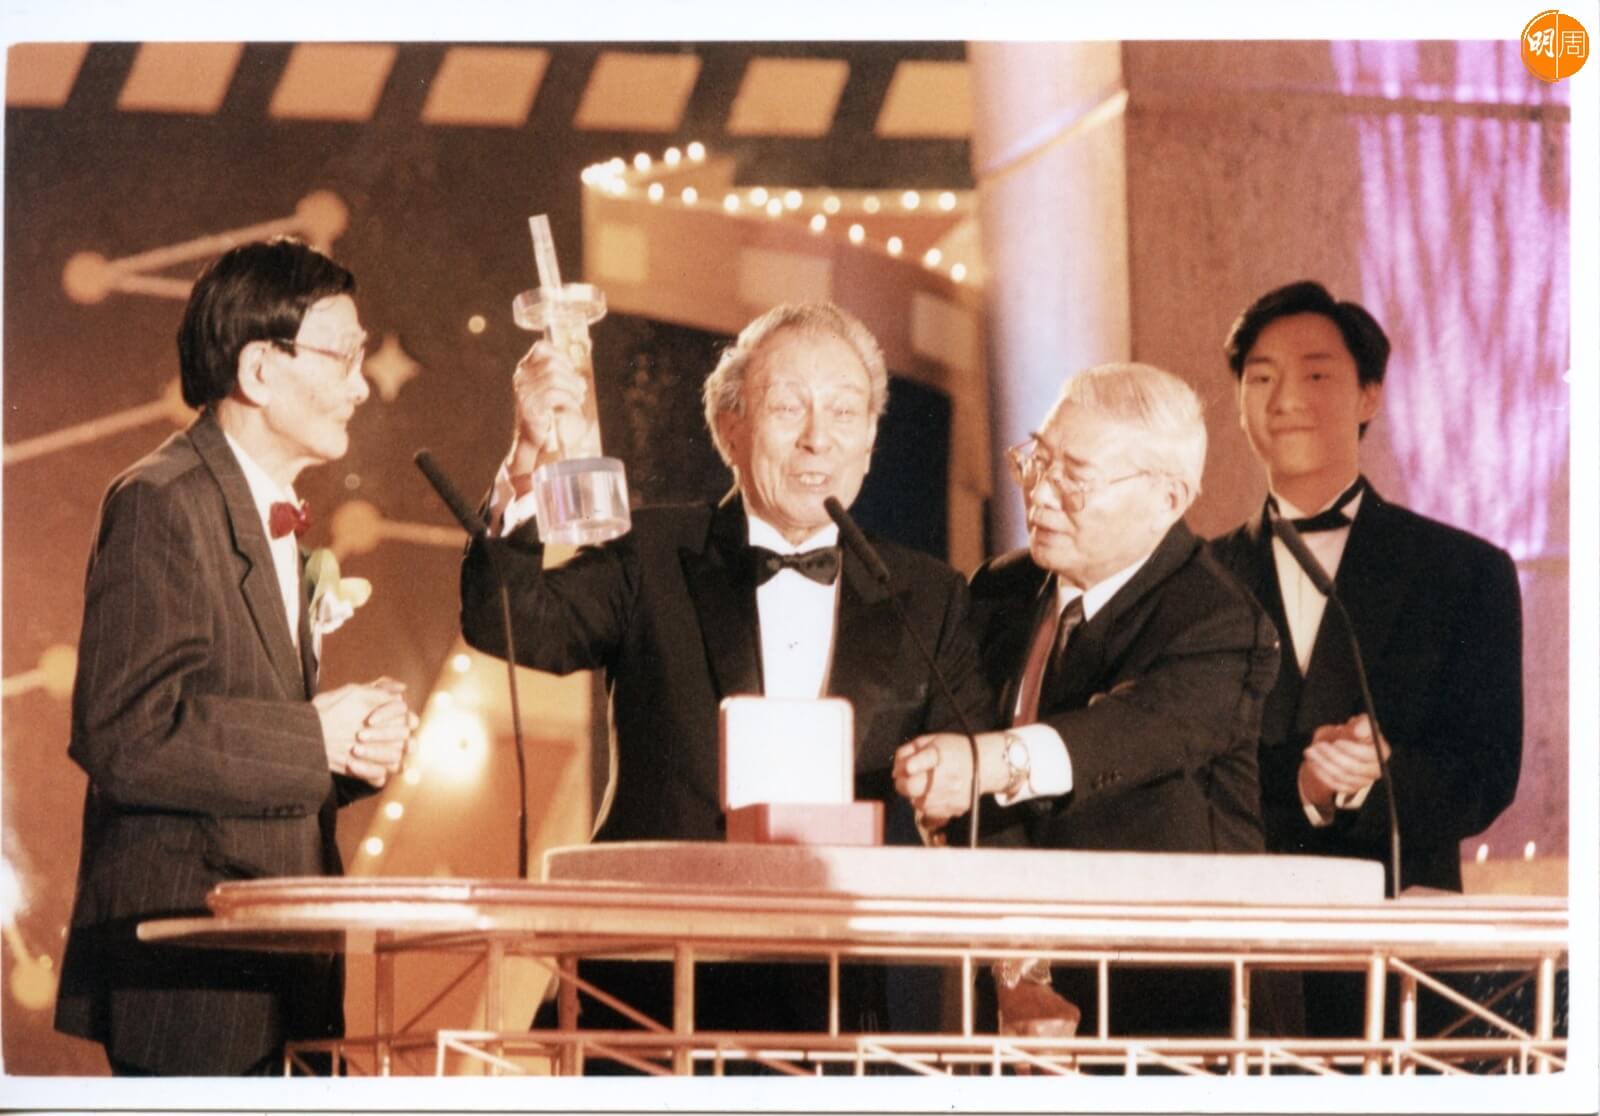  一九九六年，石堅獲香港影評人協會頒贈「金紫荊獎終身成就獎」。